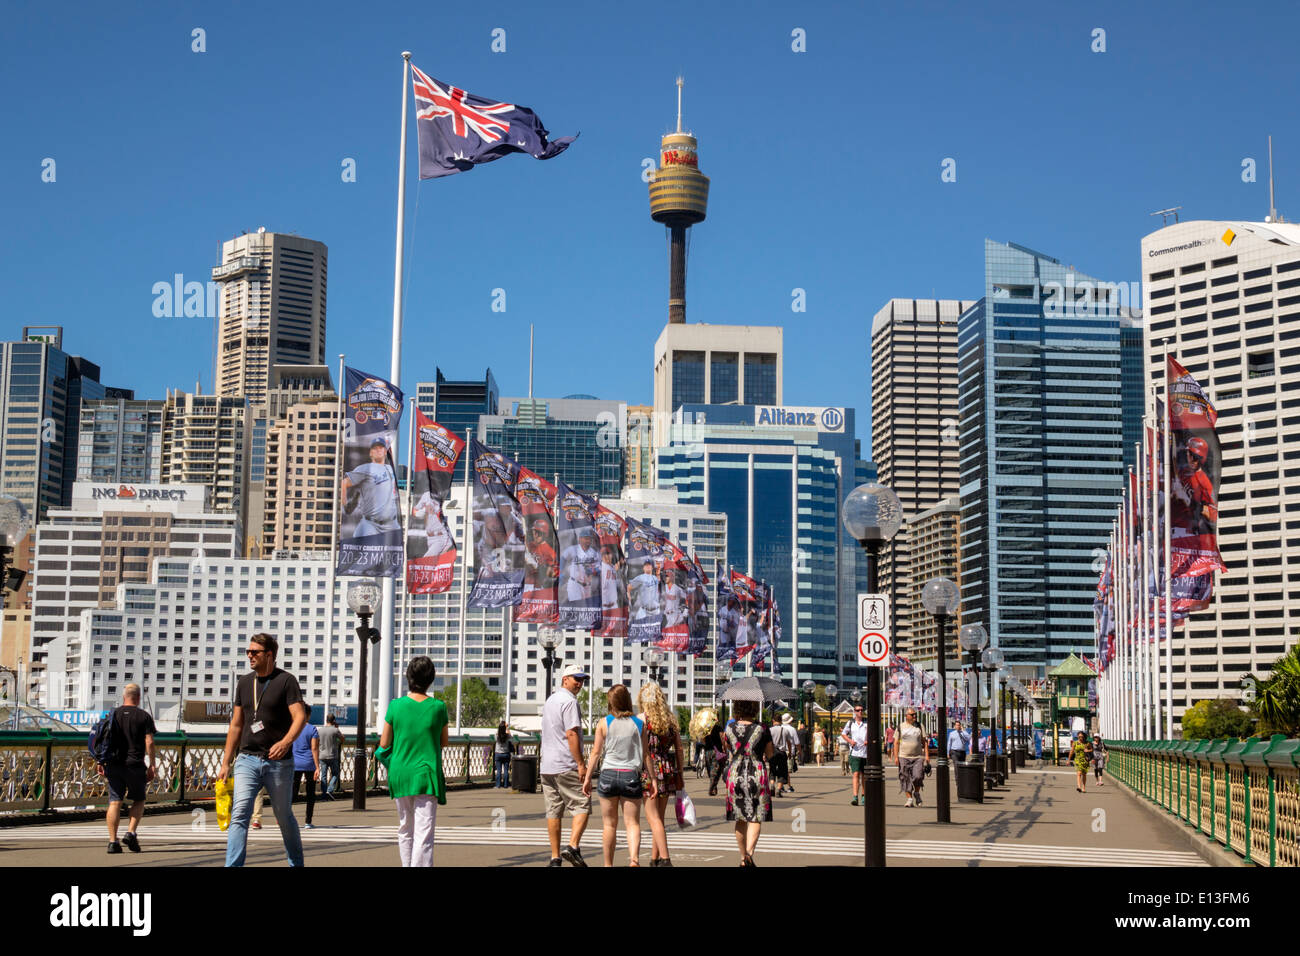 Sydney Australia, Darling Harbour, porto, Pyrmont Bridge, passeggiate, Cockle Bay, grattacieli, skyline della città, bandiera, Sydney Tower, AU140311045 Foto Stock